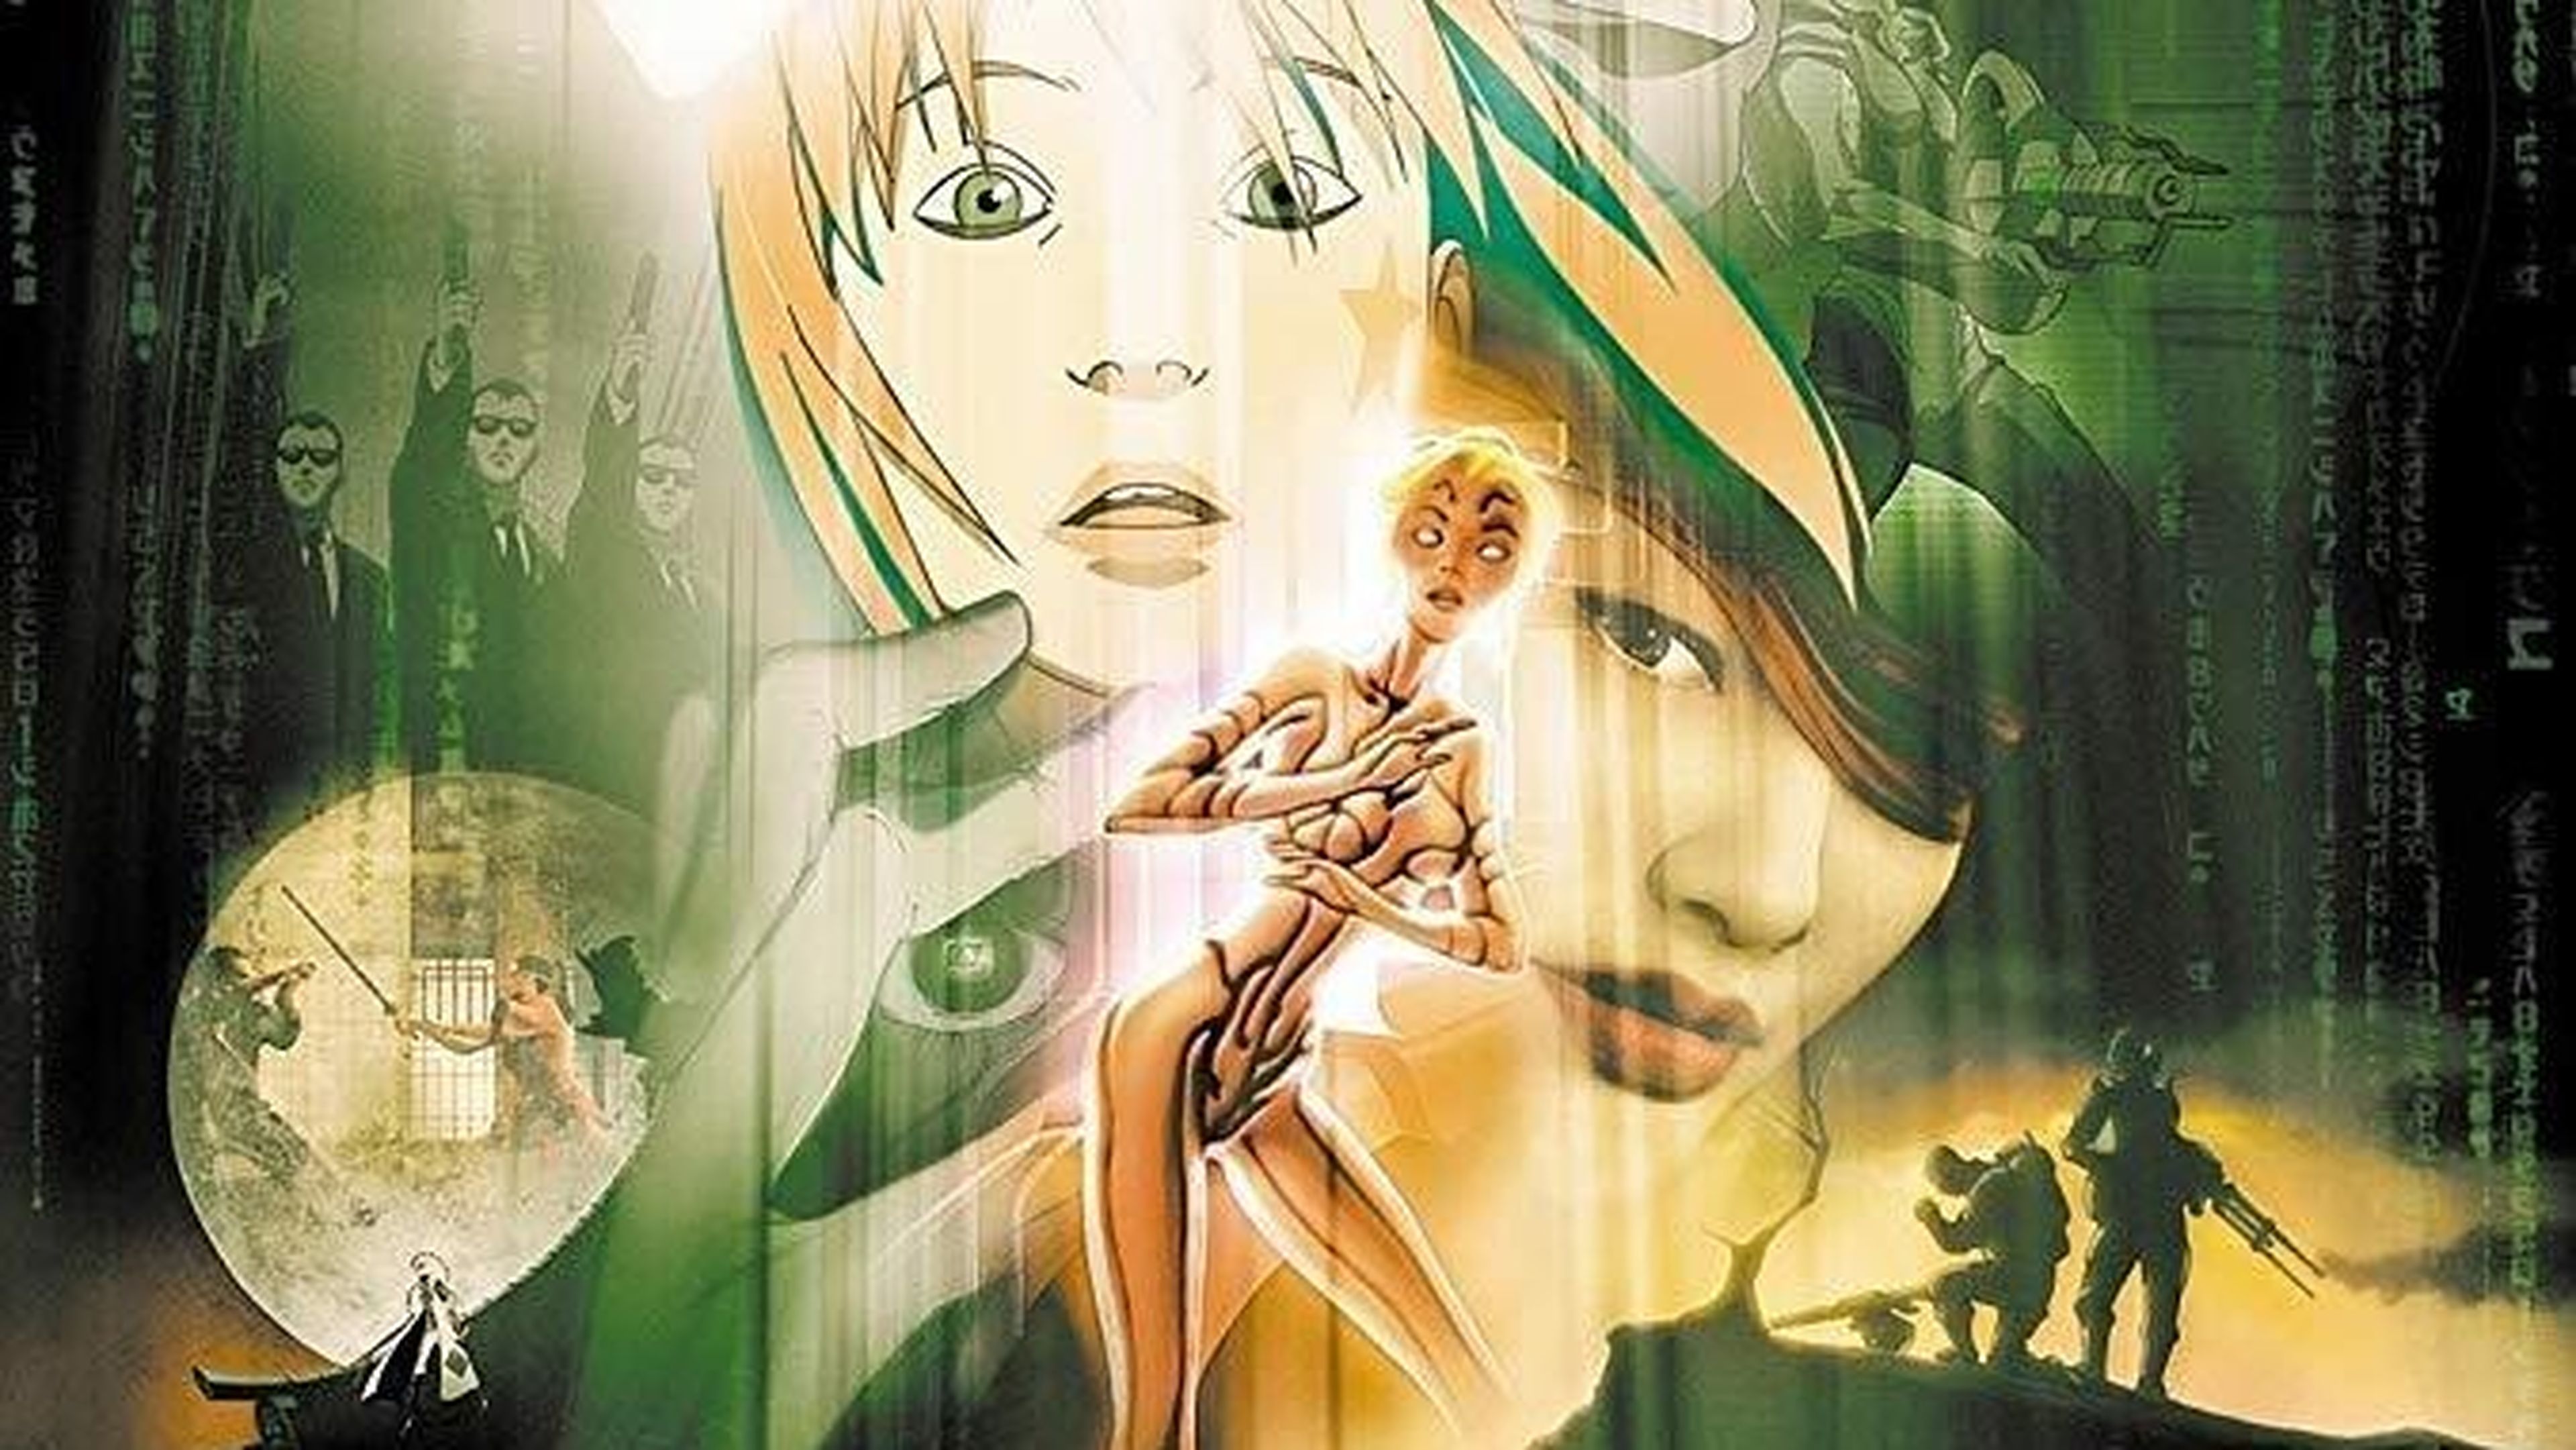 Mejores películas animadas cyberpunk - The Animatrix